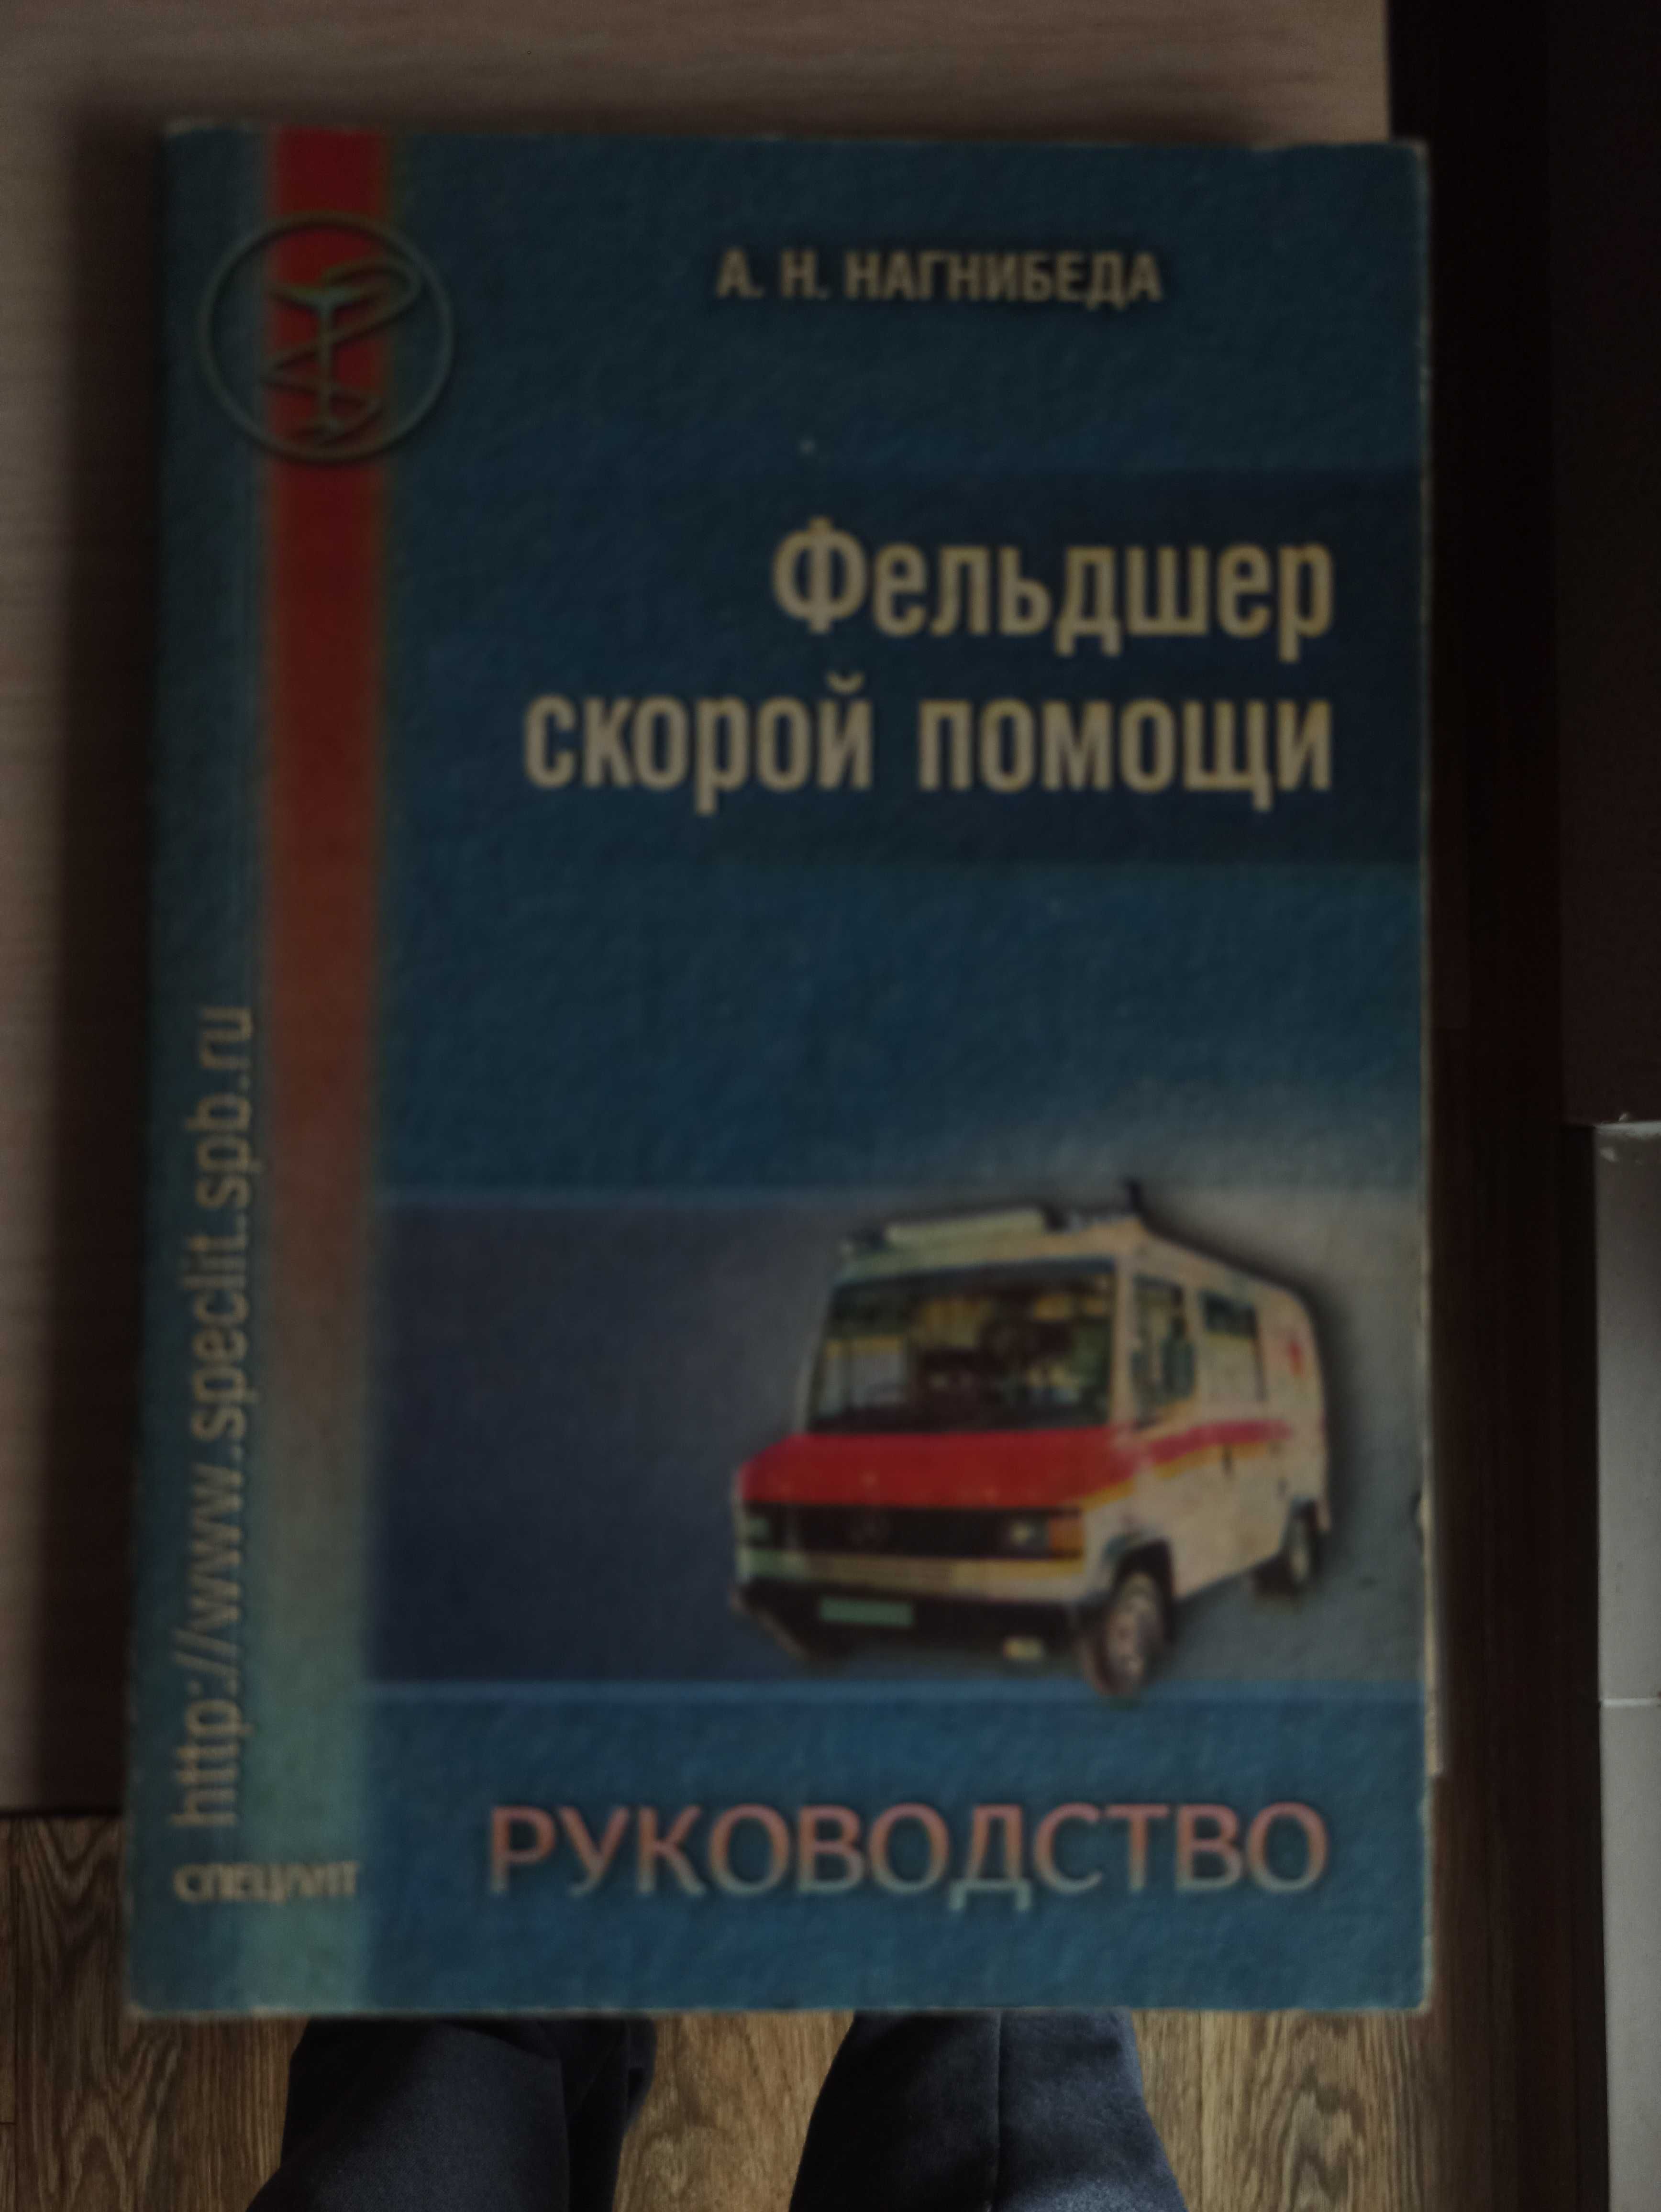 Фельдшер скорой помощи (руководство, Нагнибеда, С-Петербург, 237с)